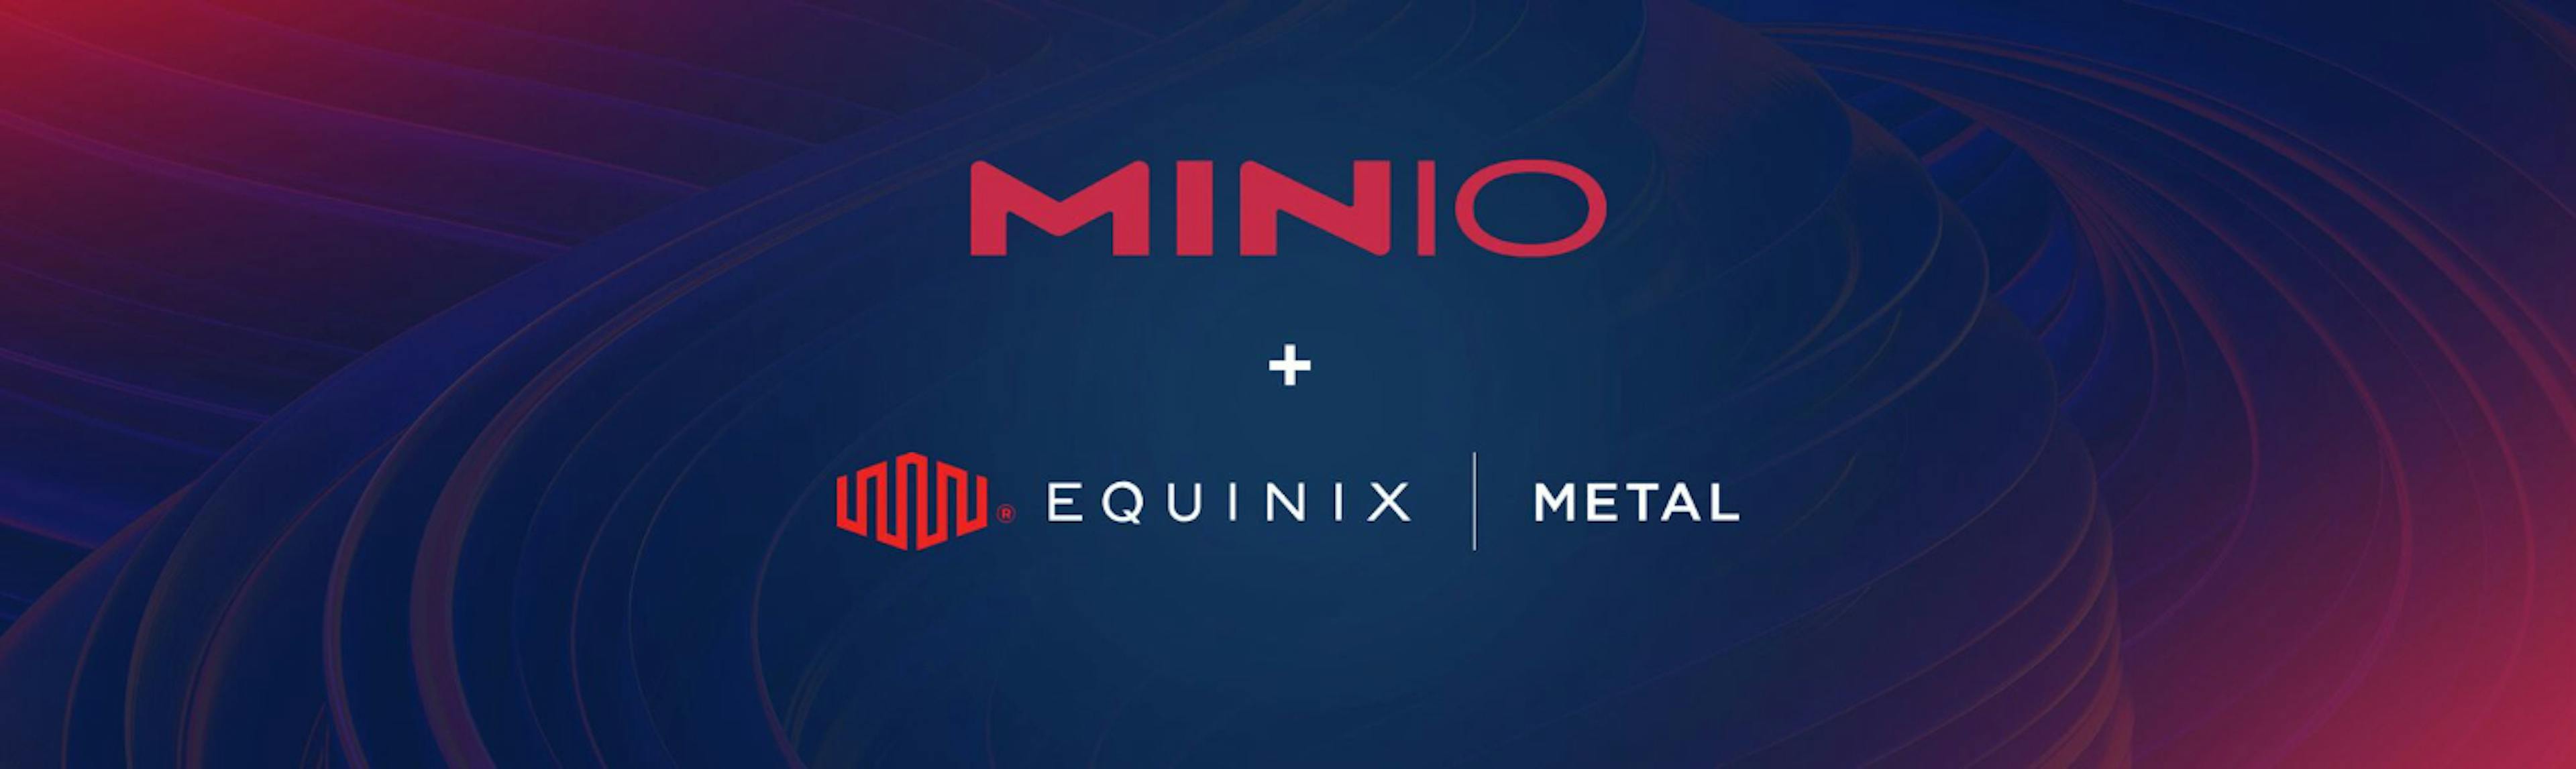 featured image - Cách di chuyển từ AWS S3 sang MinIO trên Equinix Metal